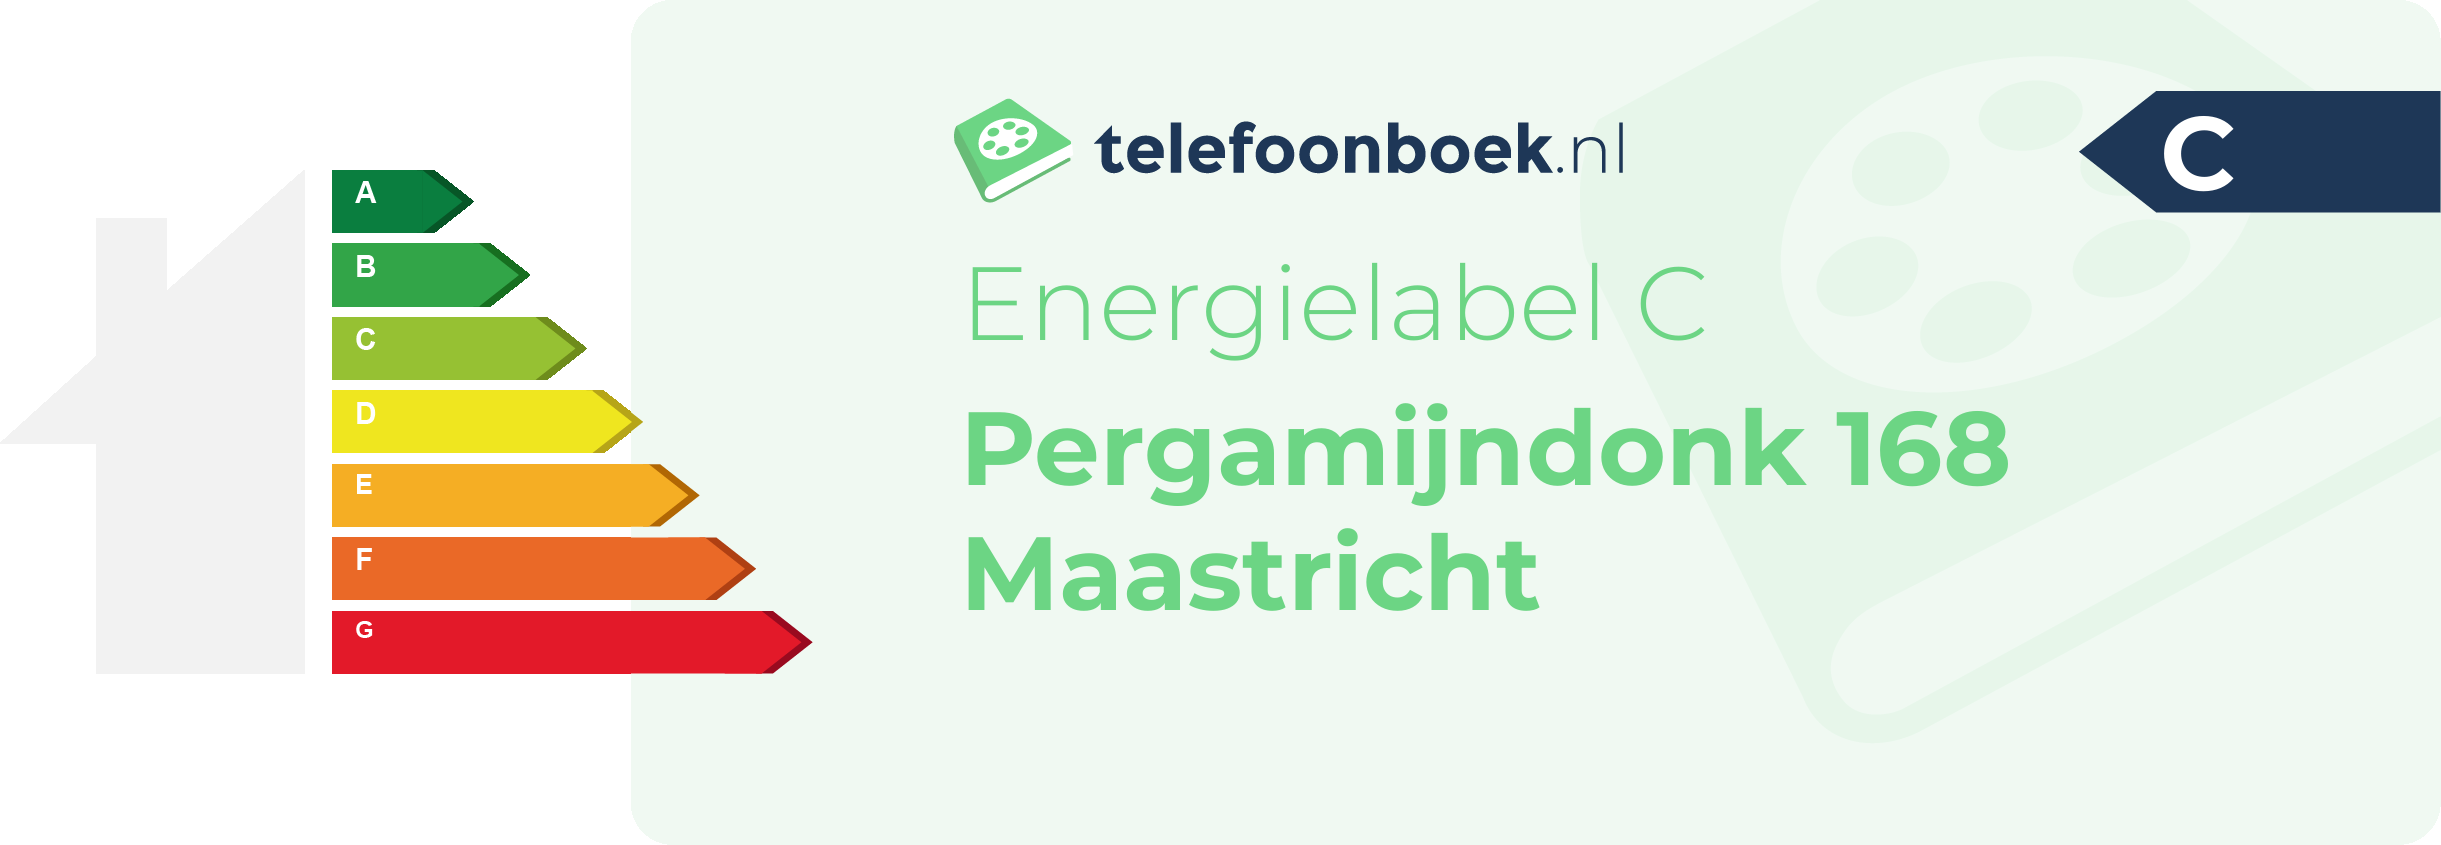 Energielabel Pergamijndonk 168 Maastricht